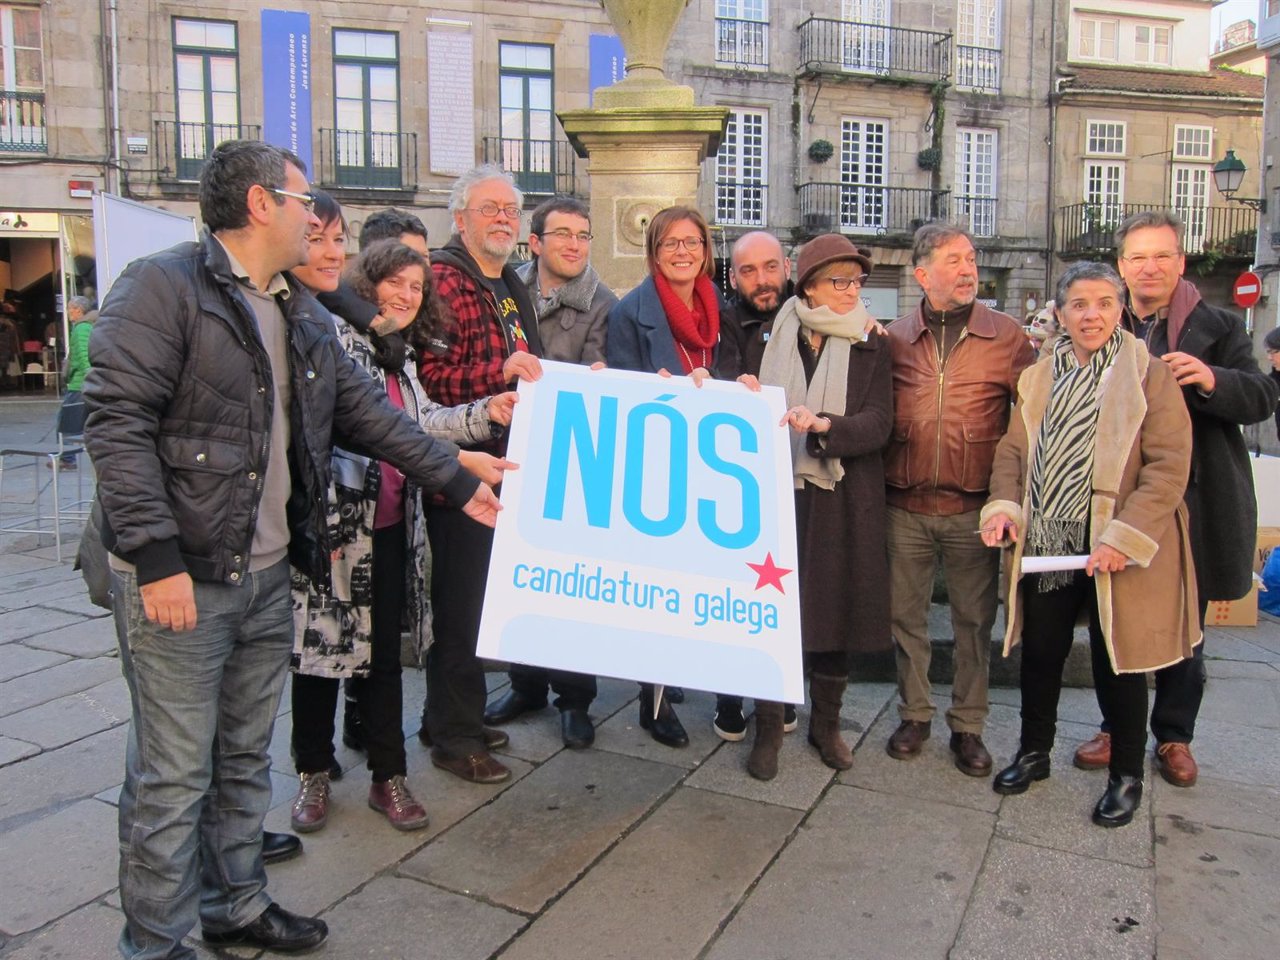 Acto de Nós Candidatura Galega en la Praza do Toural de Santiago